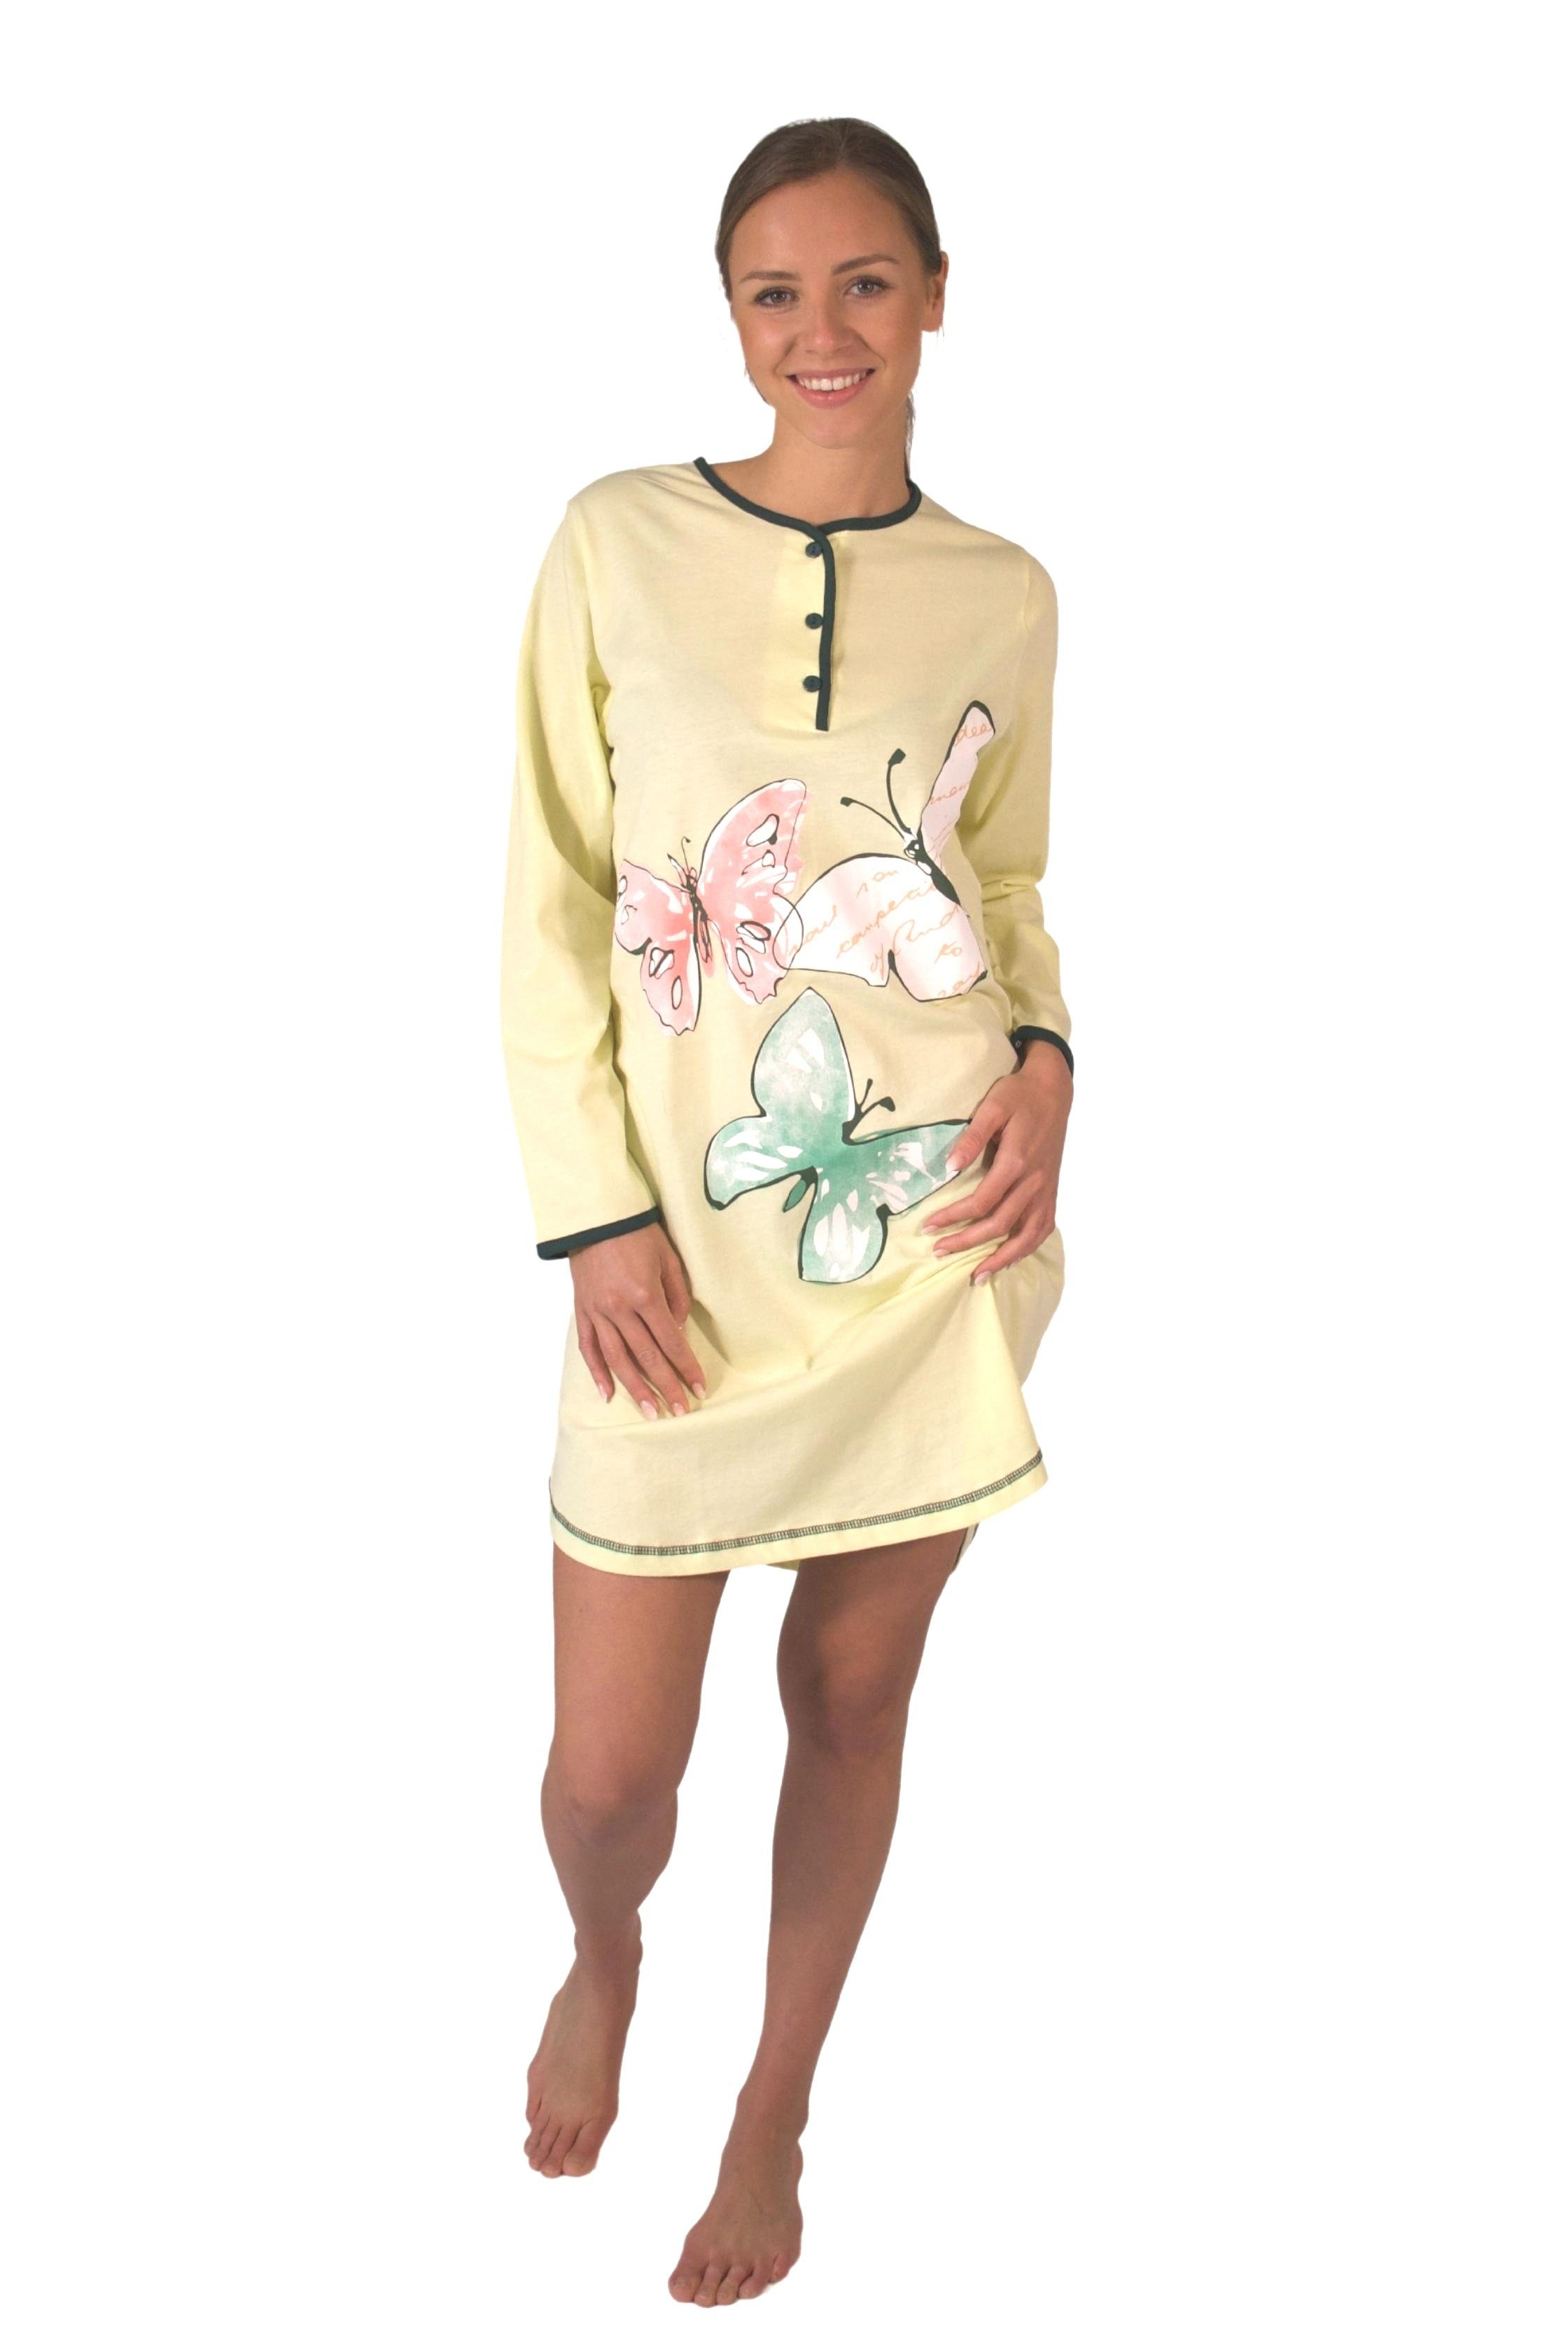 Consult-Tex Nachthemd Damen BaumwolleJersey Nachthemd DW720 bequem mingrün tragen zu